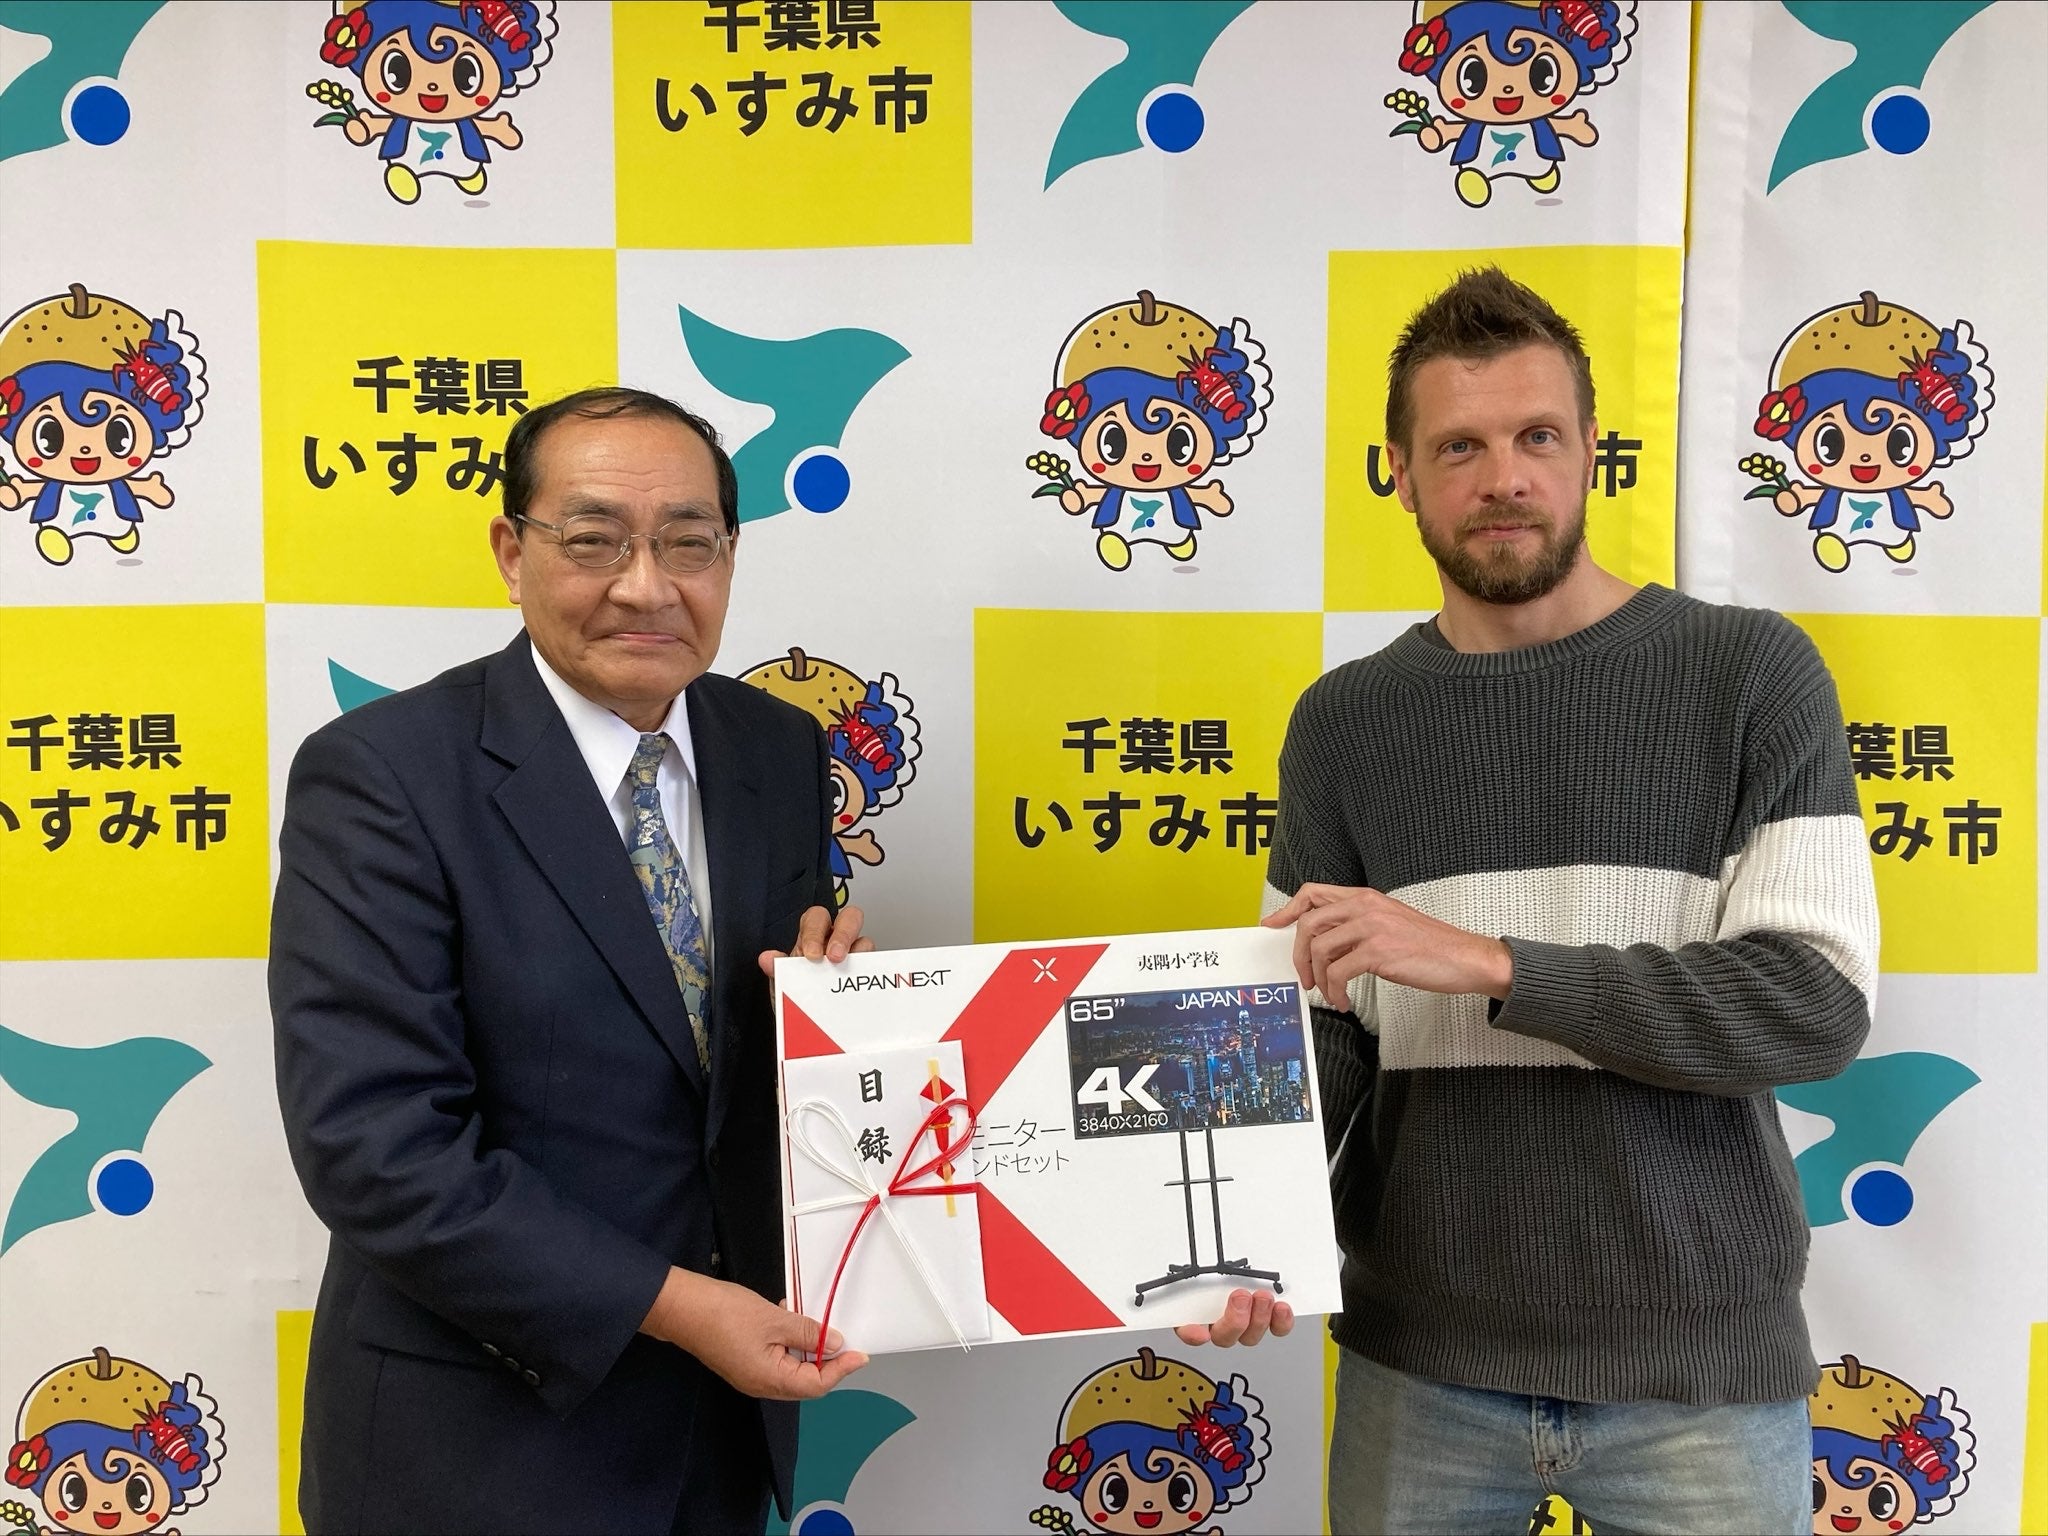 いすみ市立夷隅小学校に65 インチ4K モニターおよびモニタースタンドを寄贈しました!